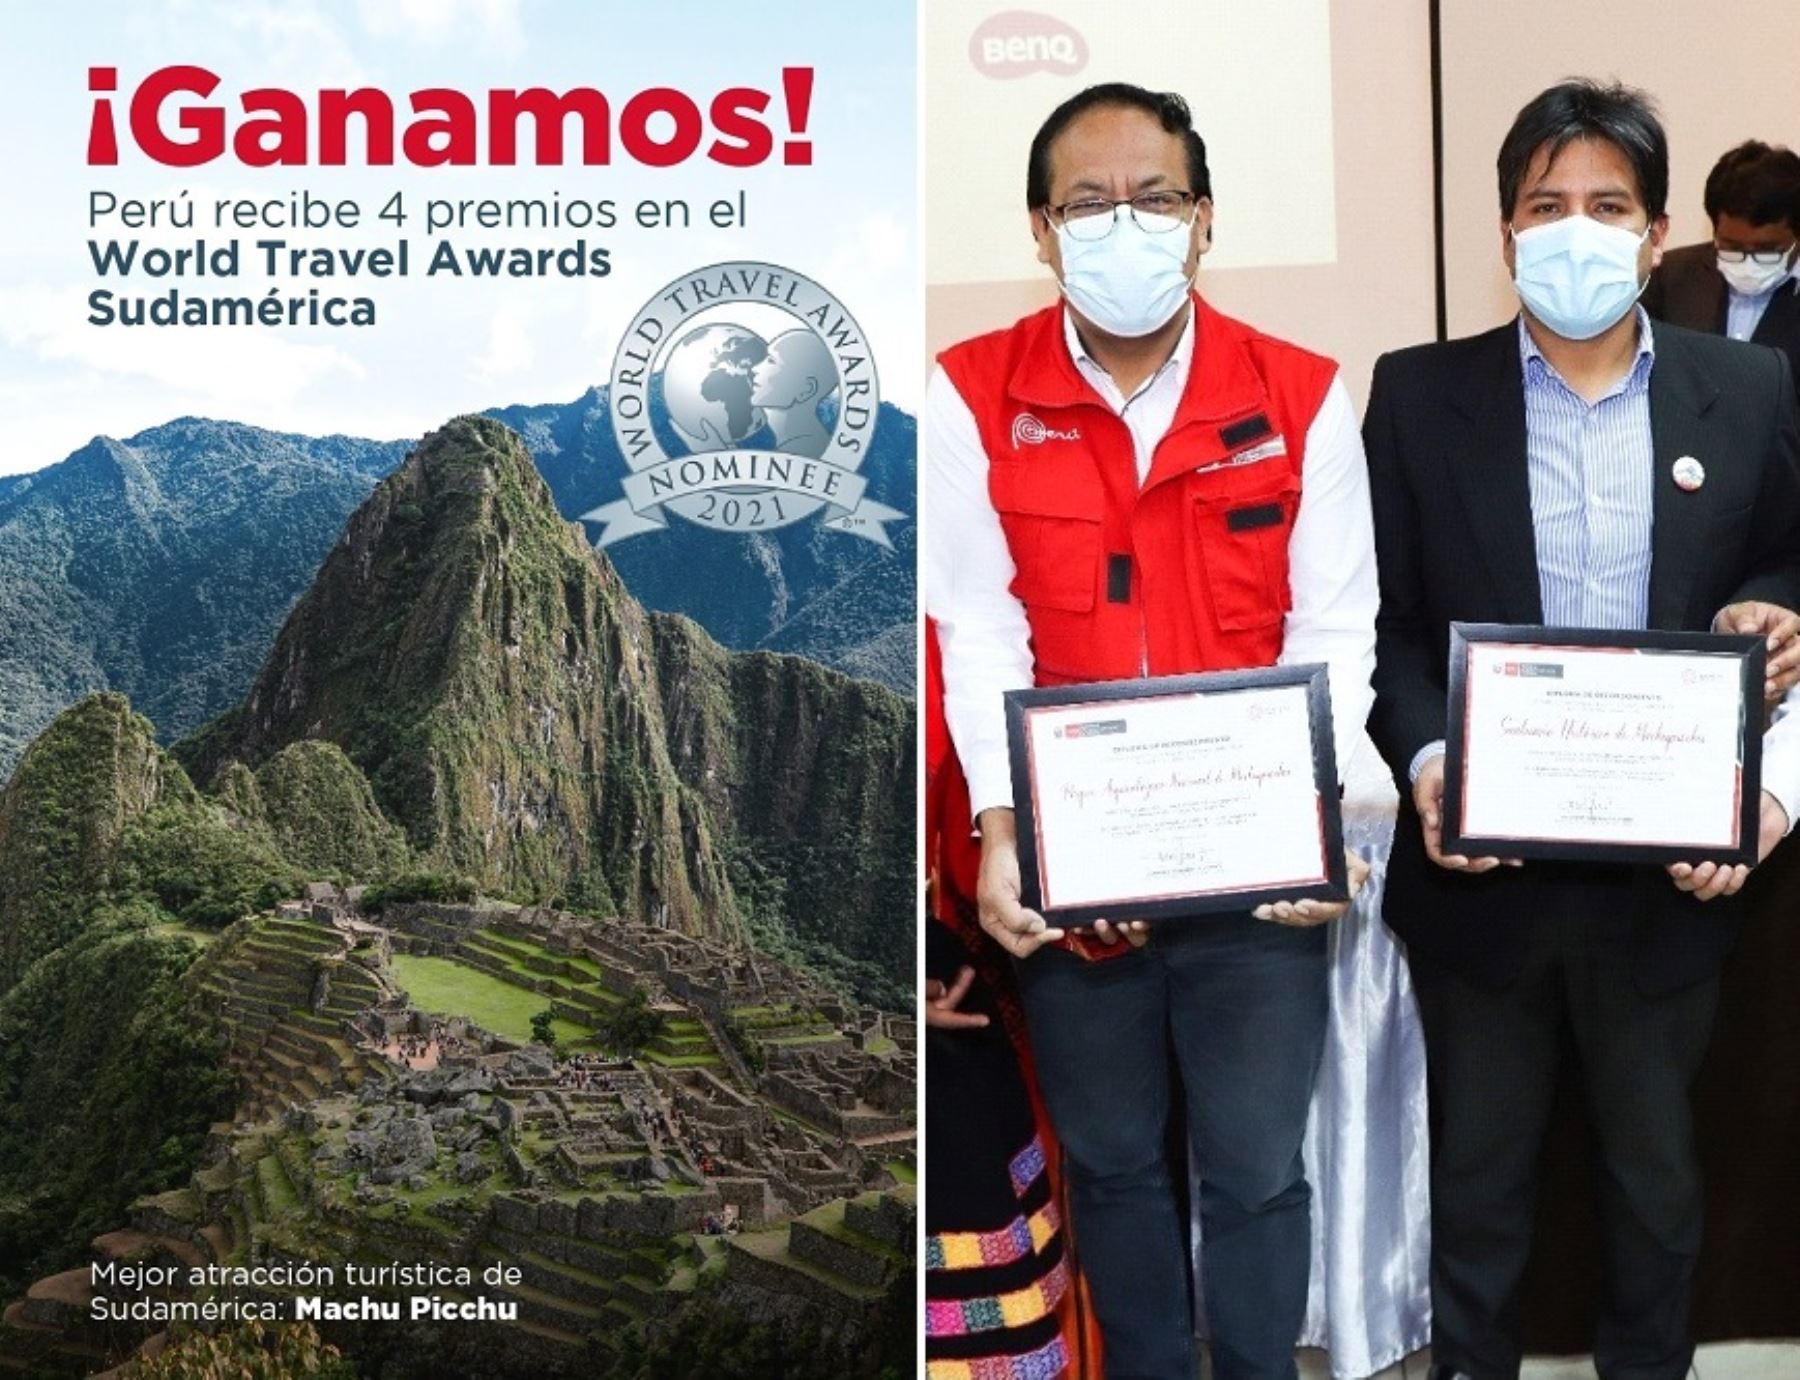 Reconocimiento de los Oscar del Turismo a Machu Picchu como atracción turística líder en Sudamérica 2021 es motivo de orgullo nacional, afirma titular del Mincetur, Roberto Sánchez.